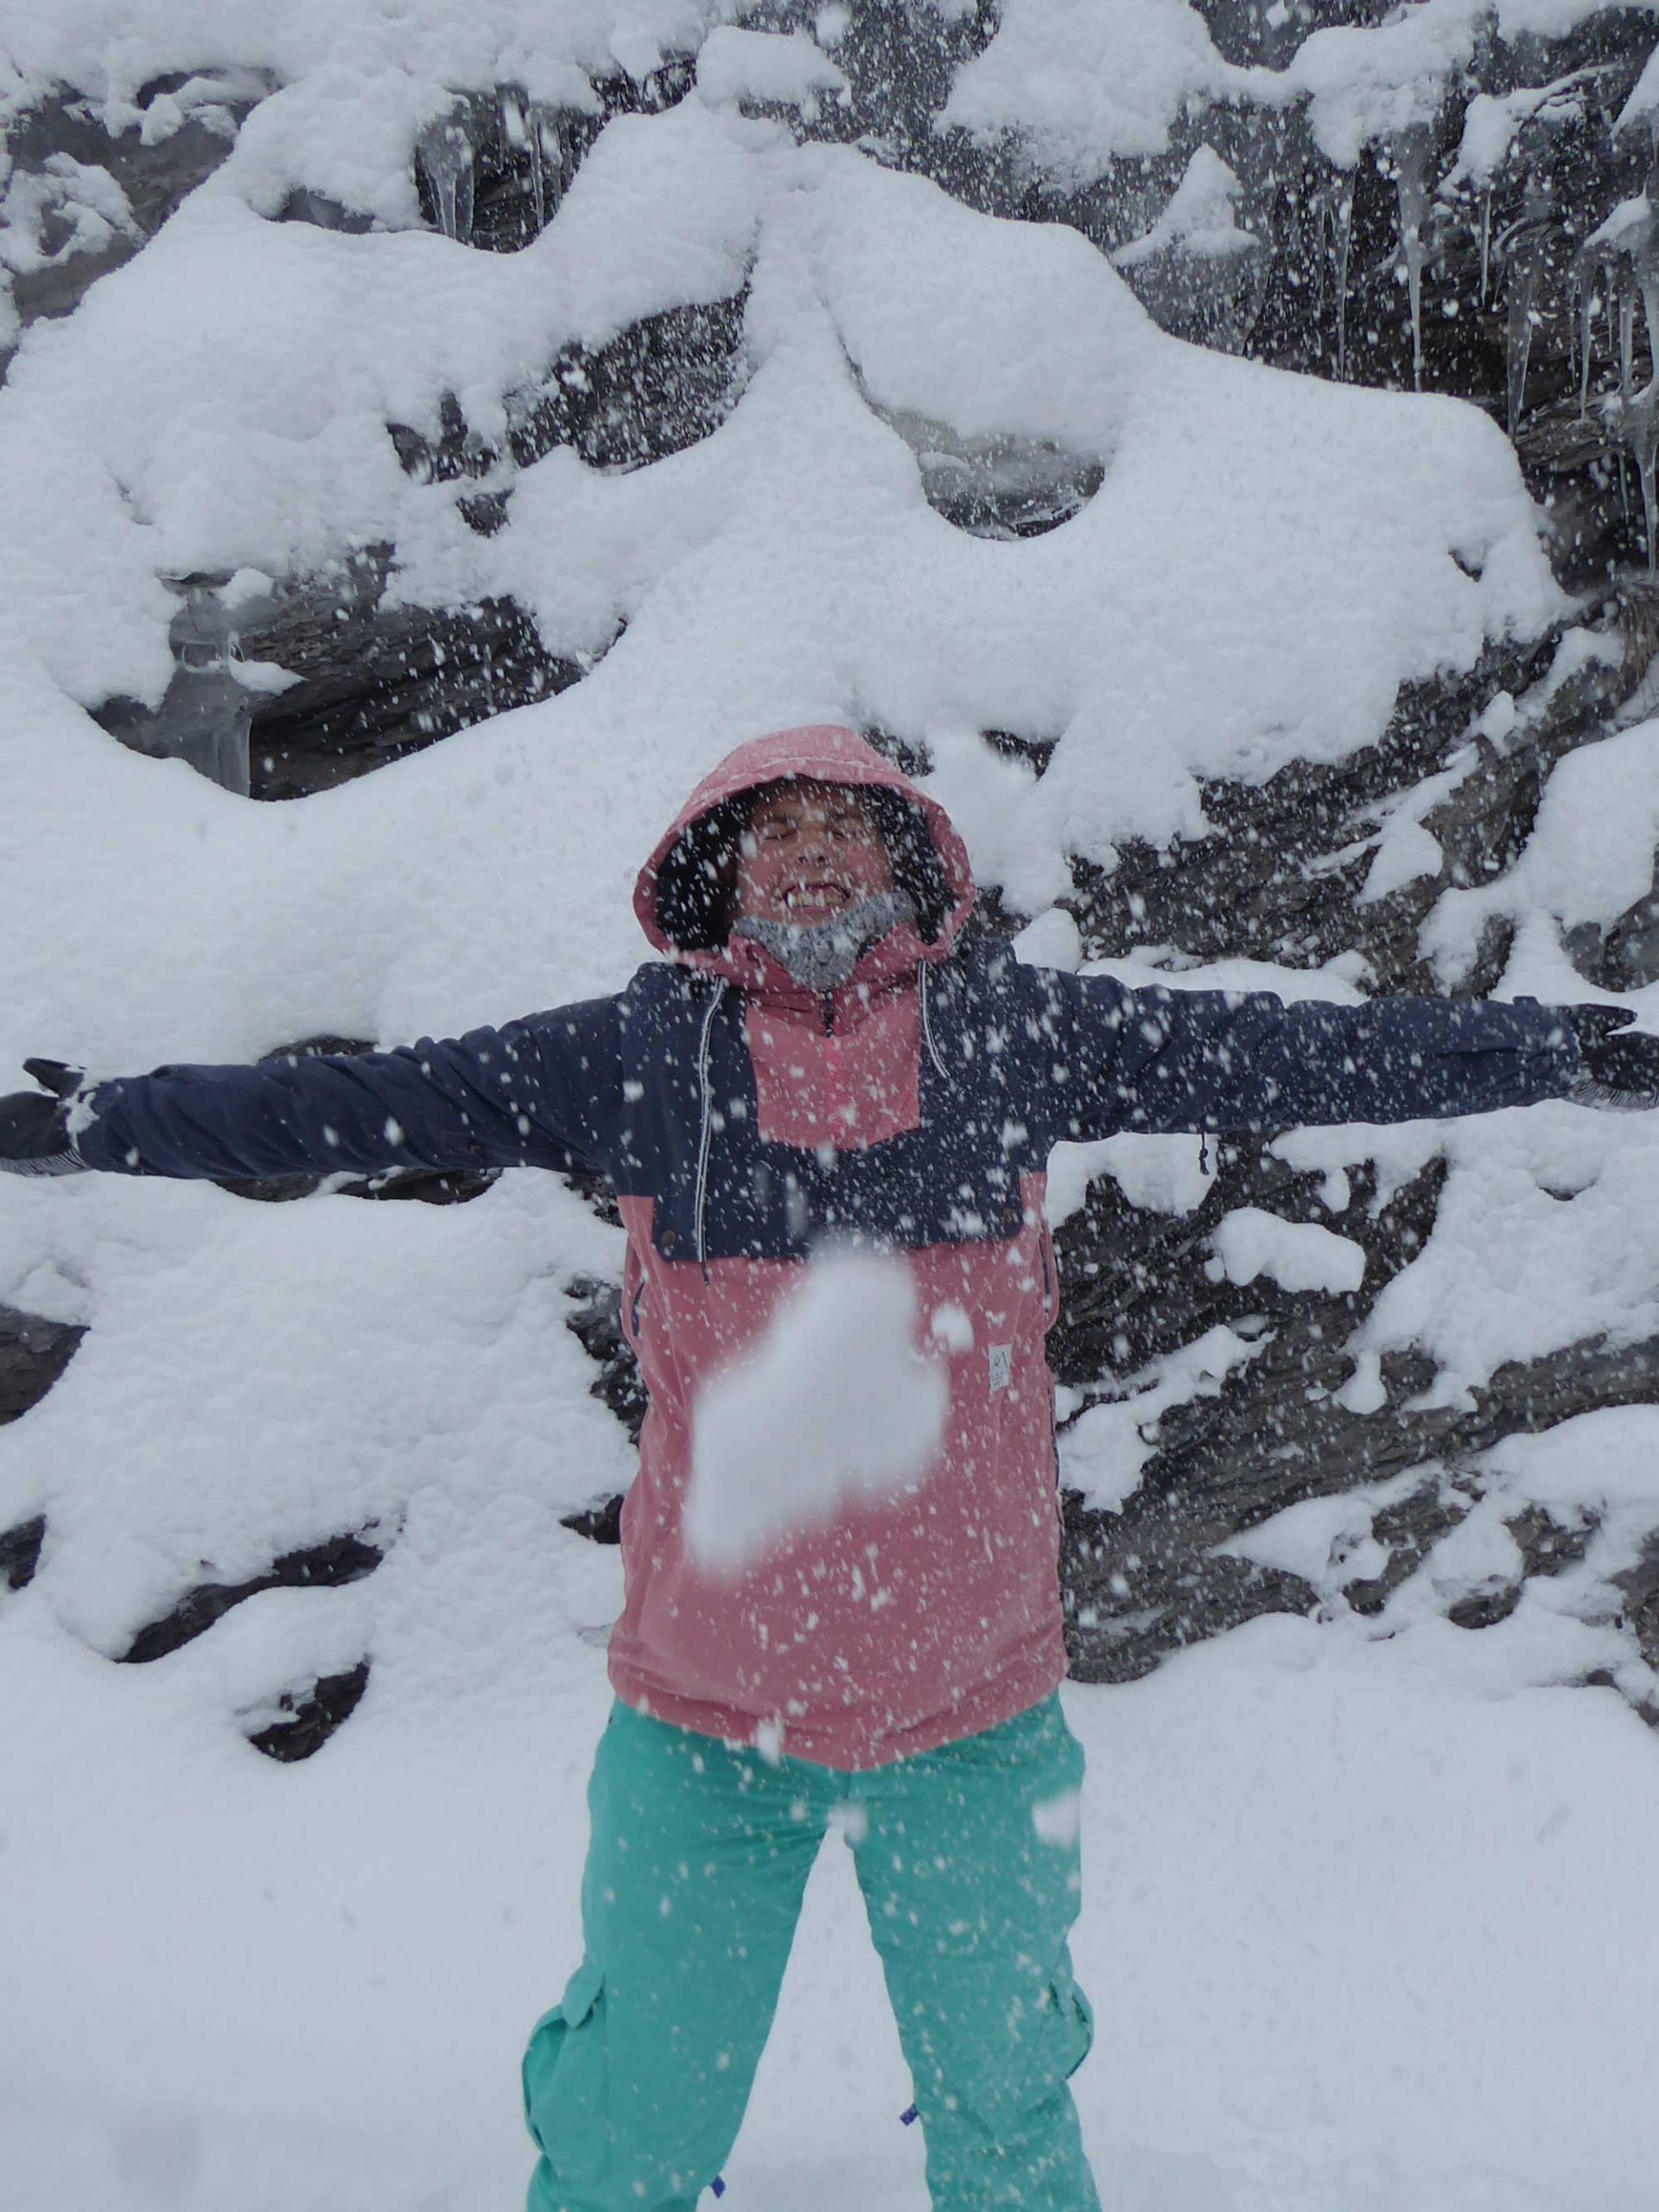 Tina in de sneeuw met roze skijas en appelblauwzeegroene skibroek